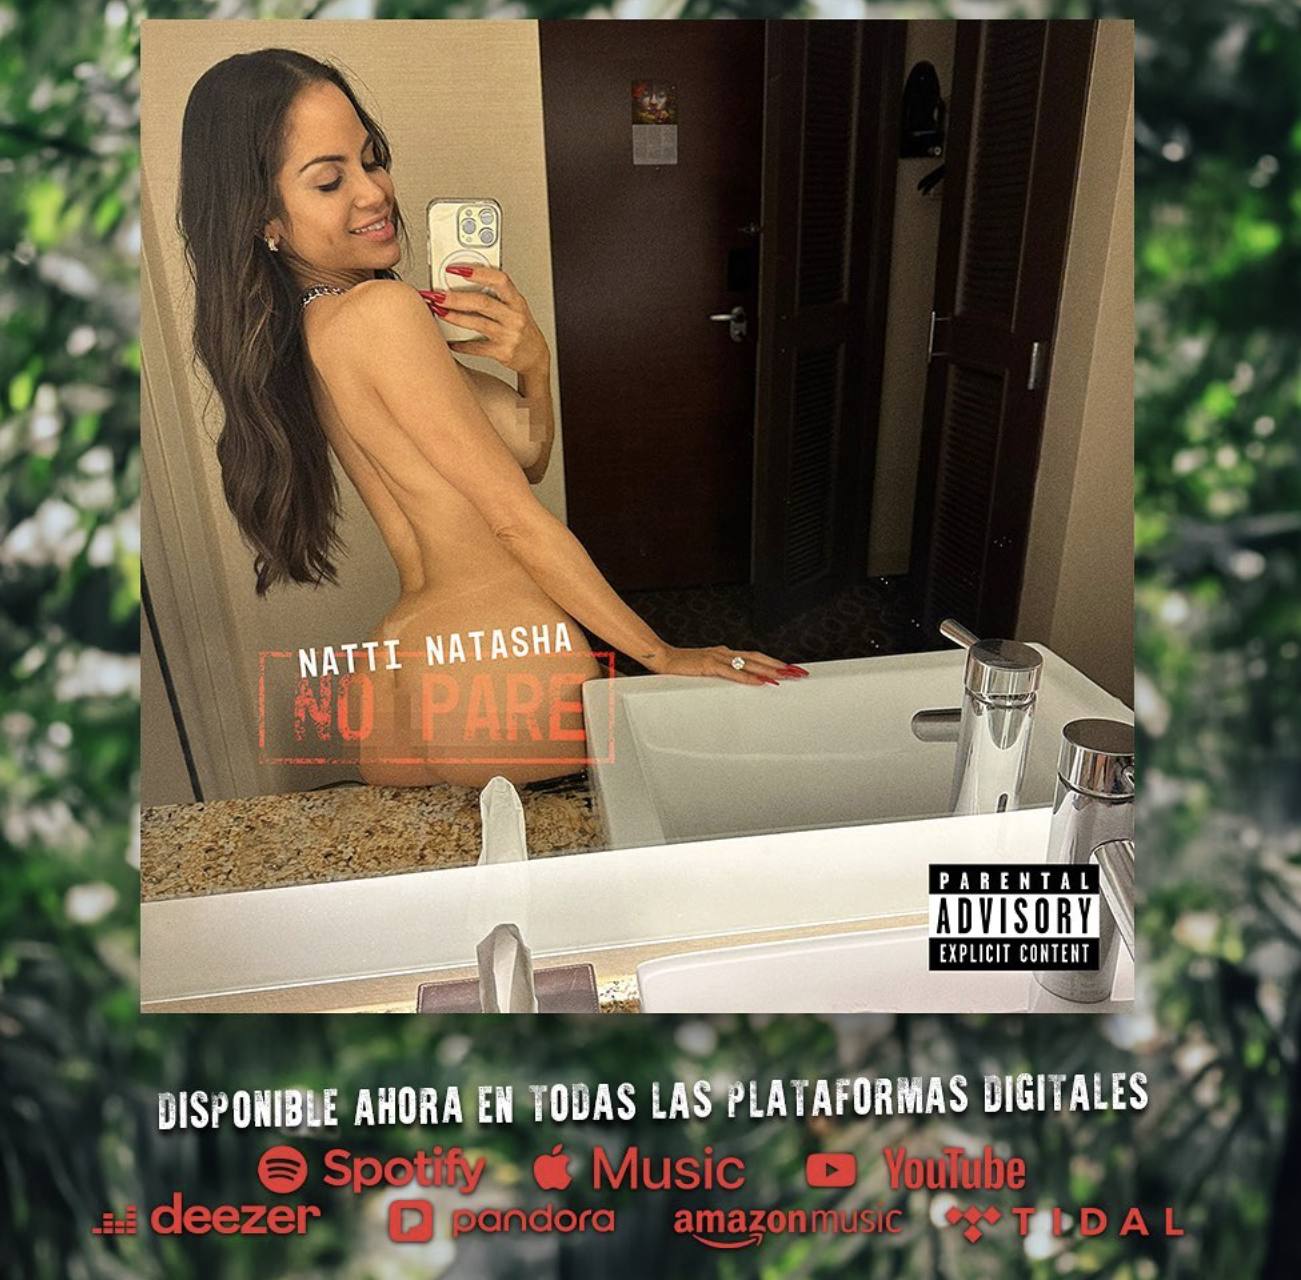 Este es el afiche de promoción de la nueva canción de Natti Natasha, donde desafió la censura sin ropa frente al espejo.